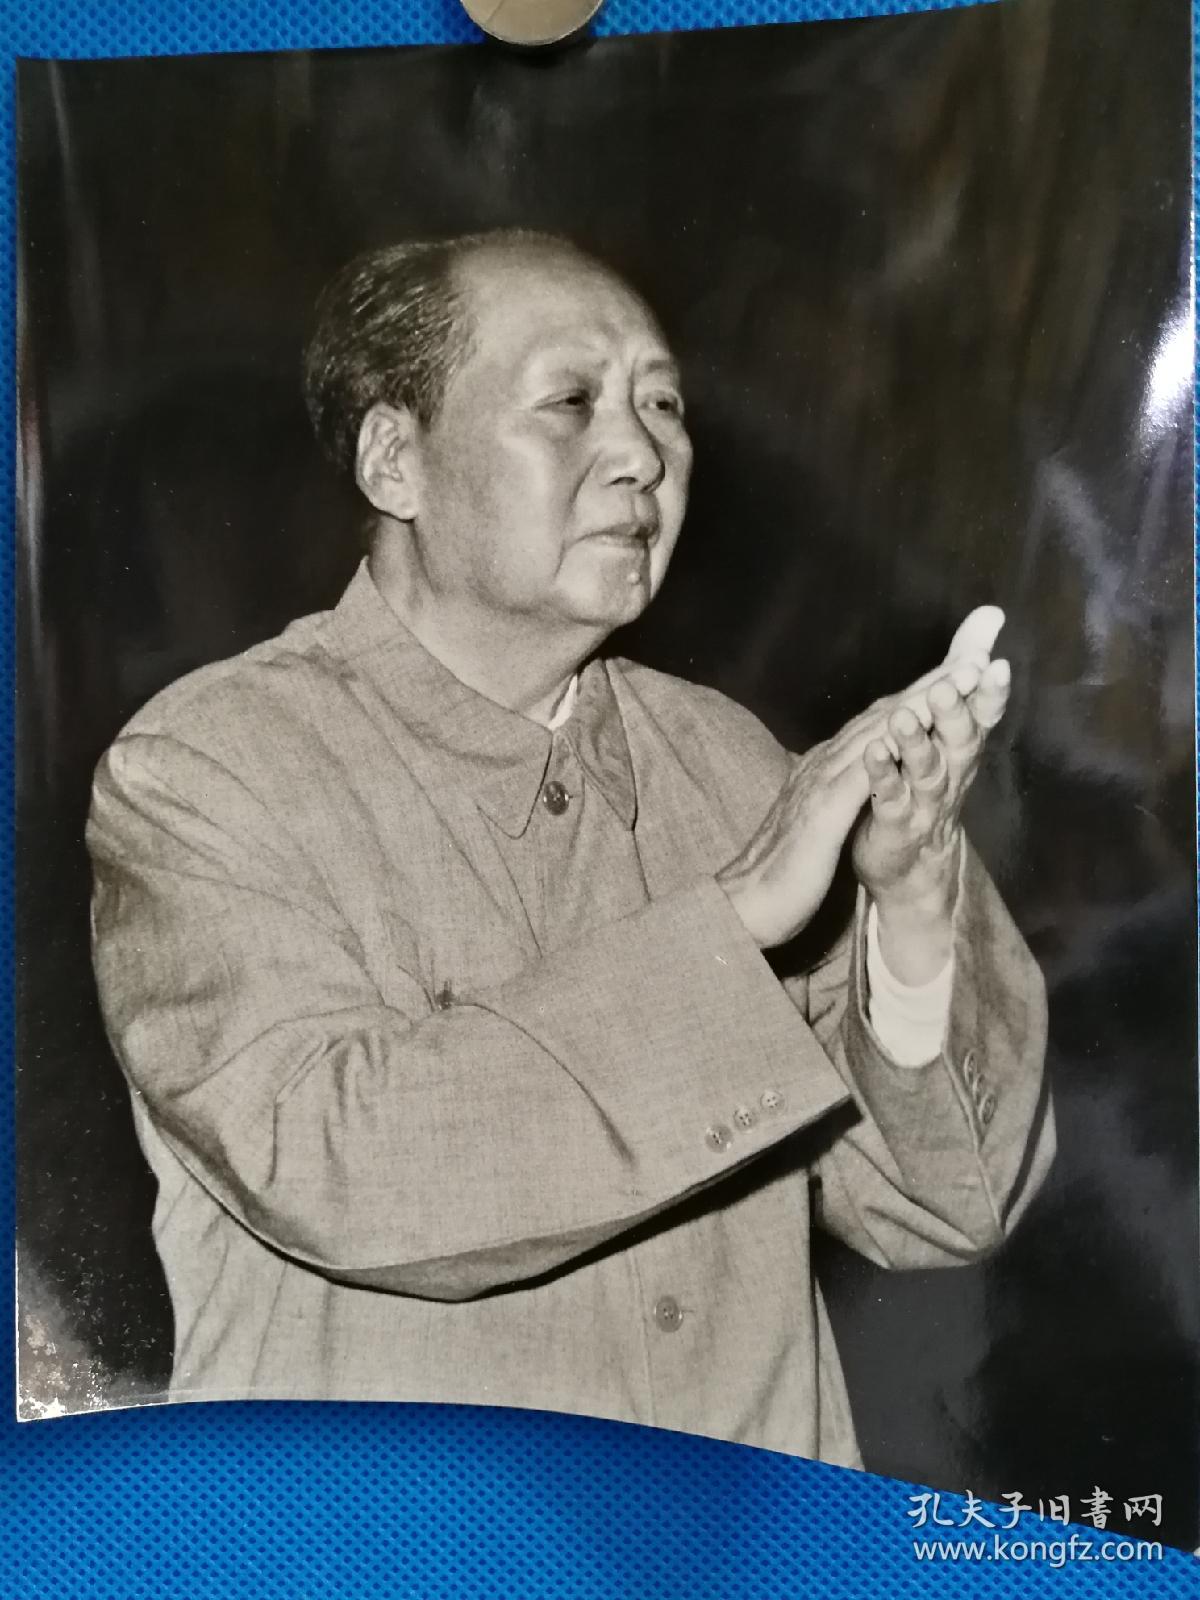 及文革期间毛泽东大中幅照片10张,拍品清晰度